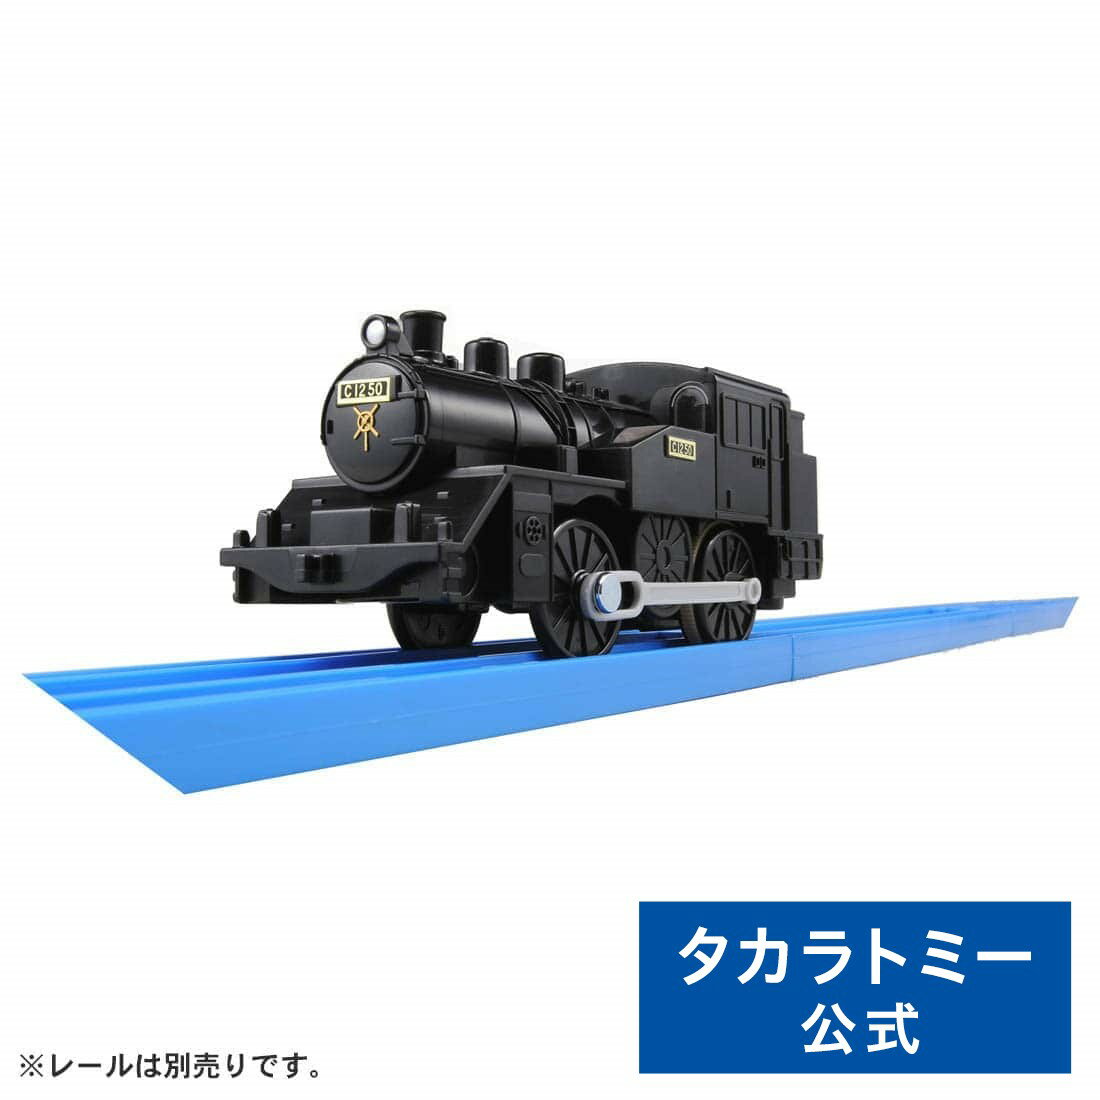 プラレール KF-01C12蒸気機関車タカラトミー プラレール | タカラトミー 電車 新幹線 列車 乗り物 おもちゃ こども 子供 ギフト プレゼント